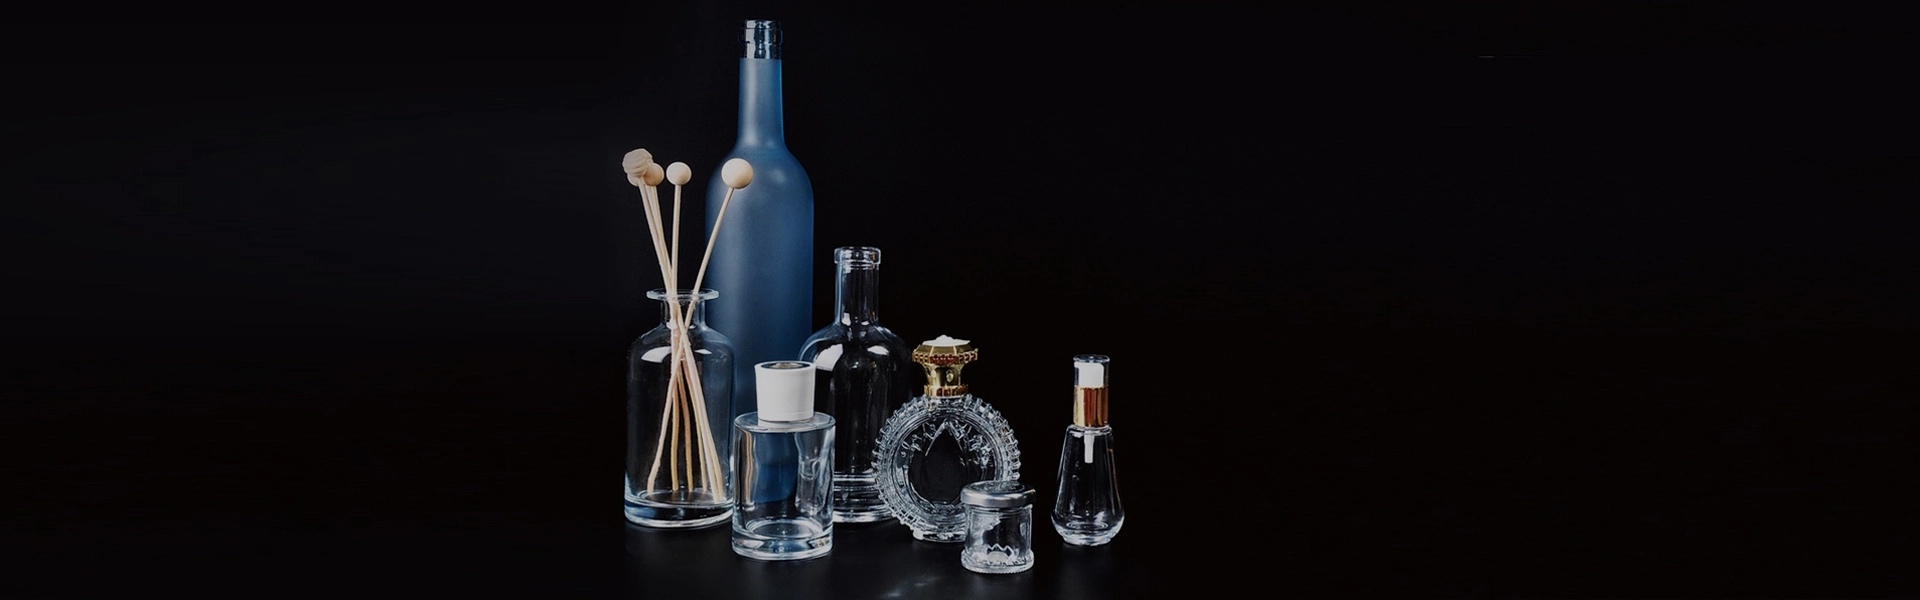 Glass Bottles For Bathroom Goods Types